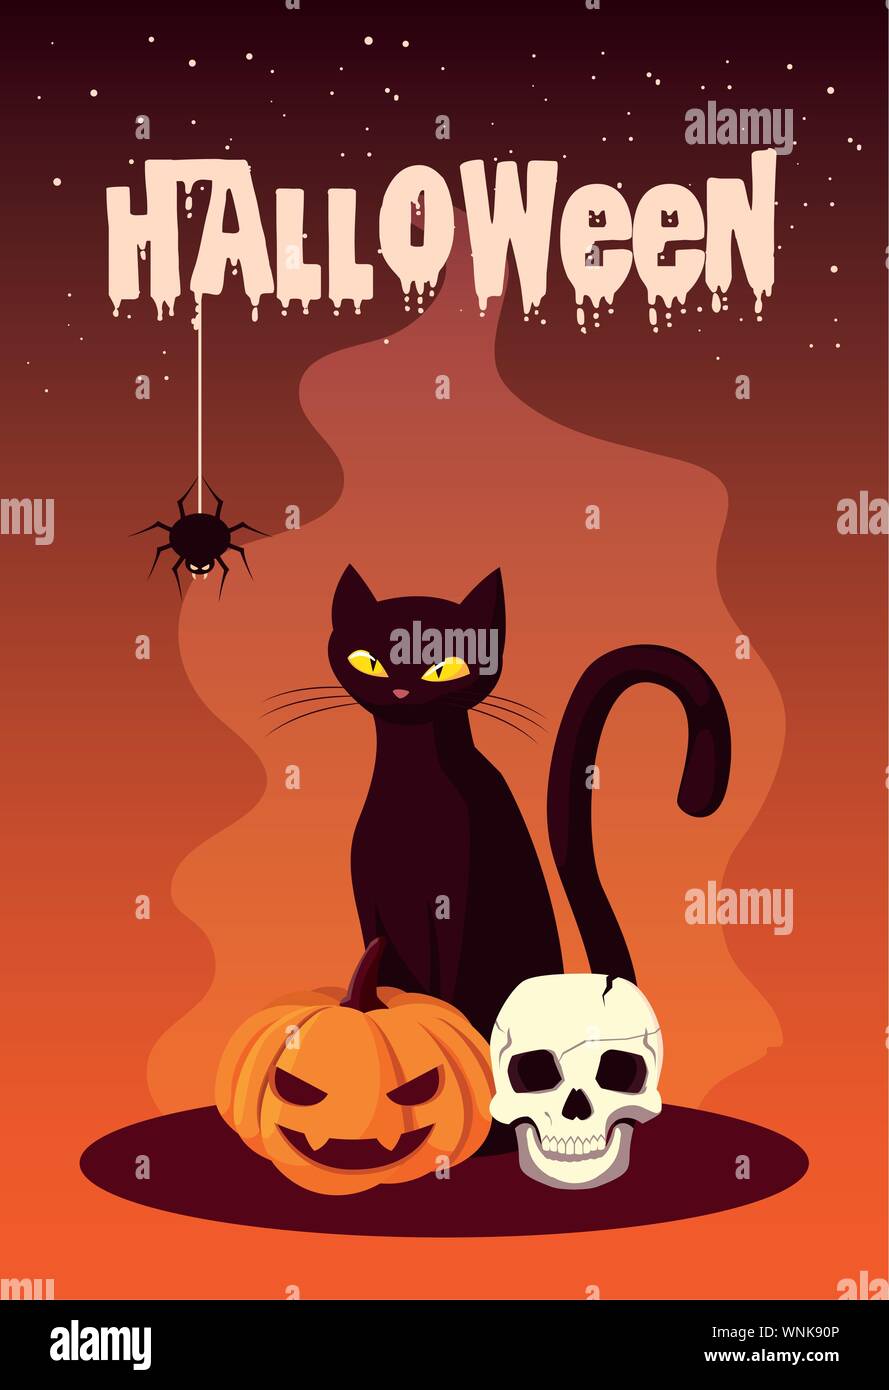 Póster de Halloween con cat y los iconos de diseño ilustración vectorial Ilustración del Vector